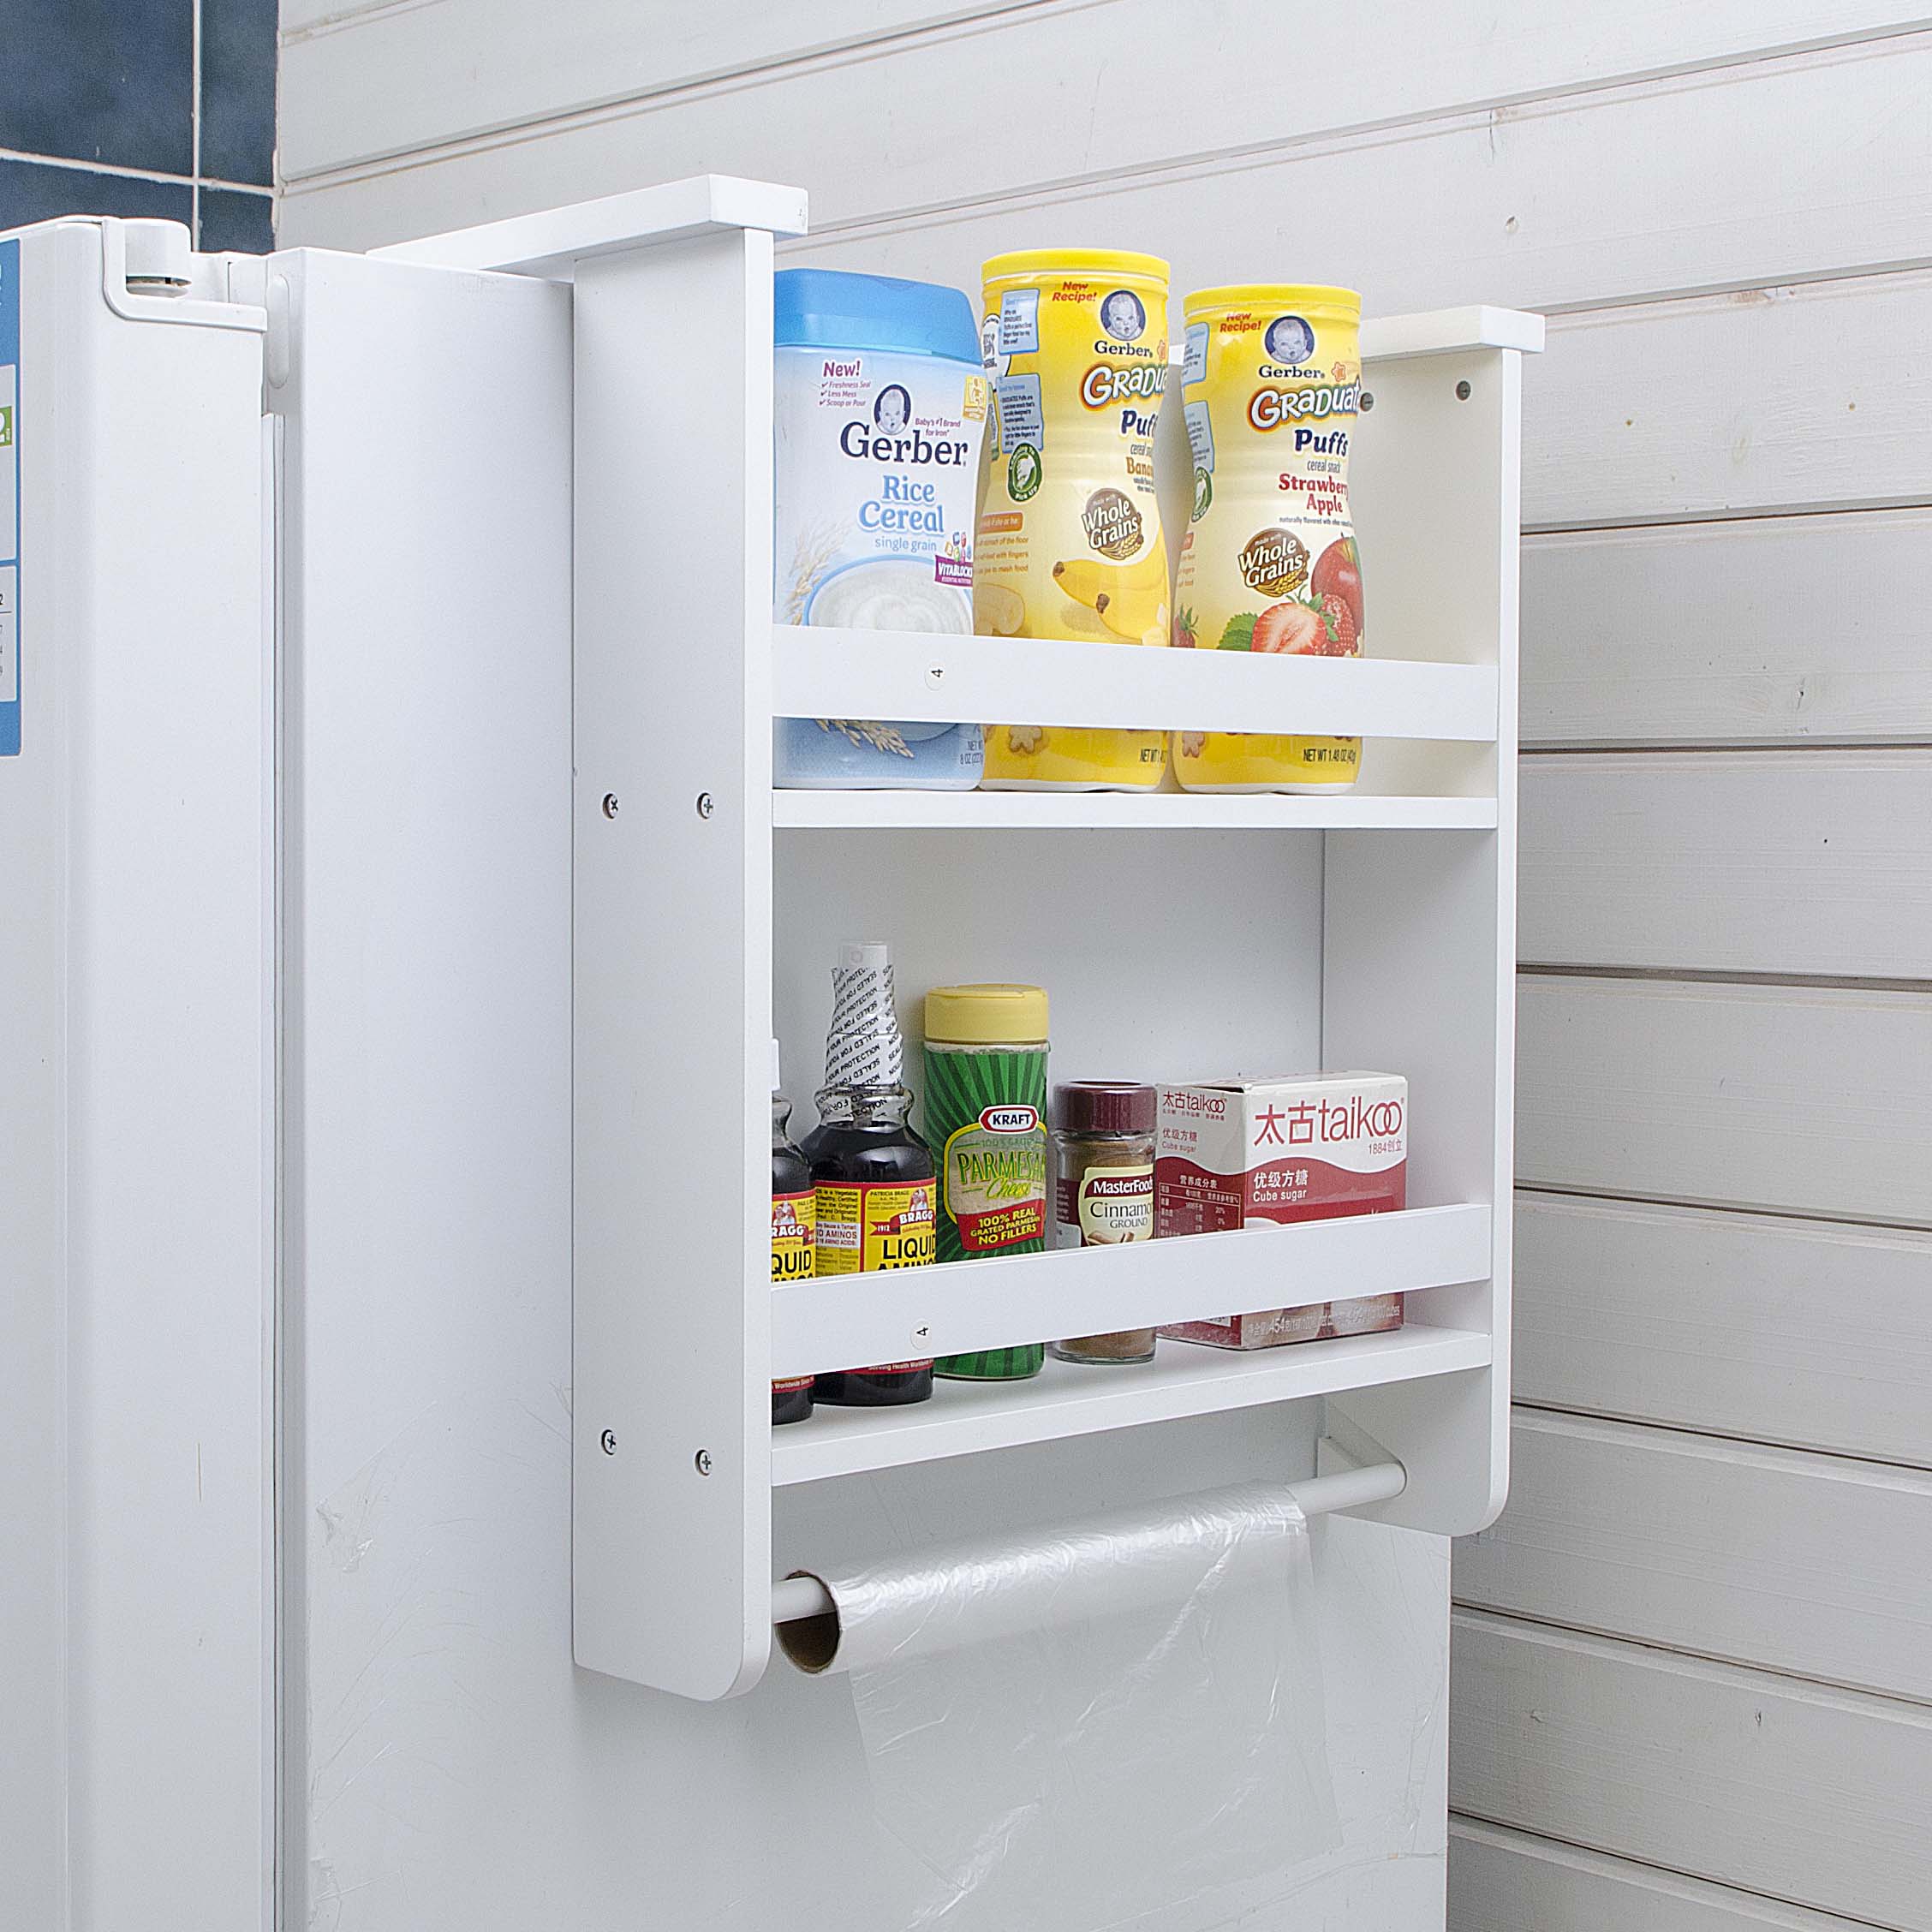 冰箱侧挂架置物架冰箱收纳架调味品架厨房置物架冰箱挂架冰箱收纳